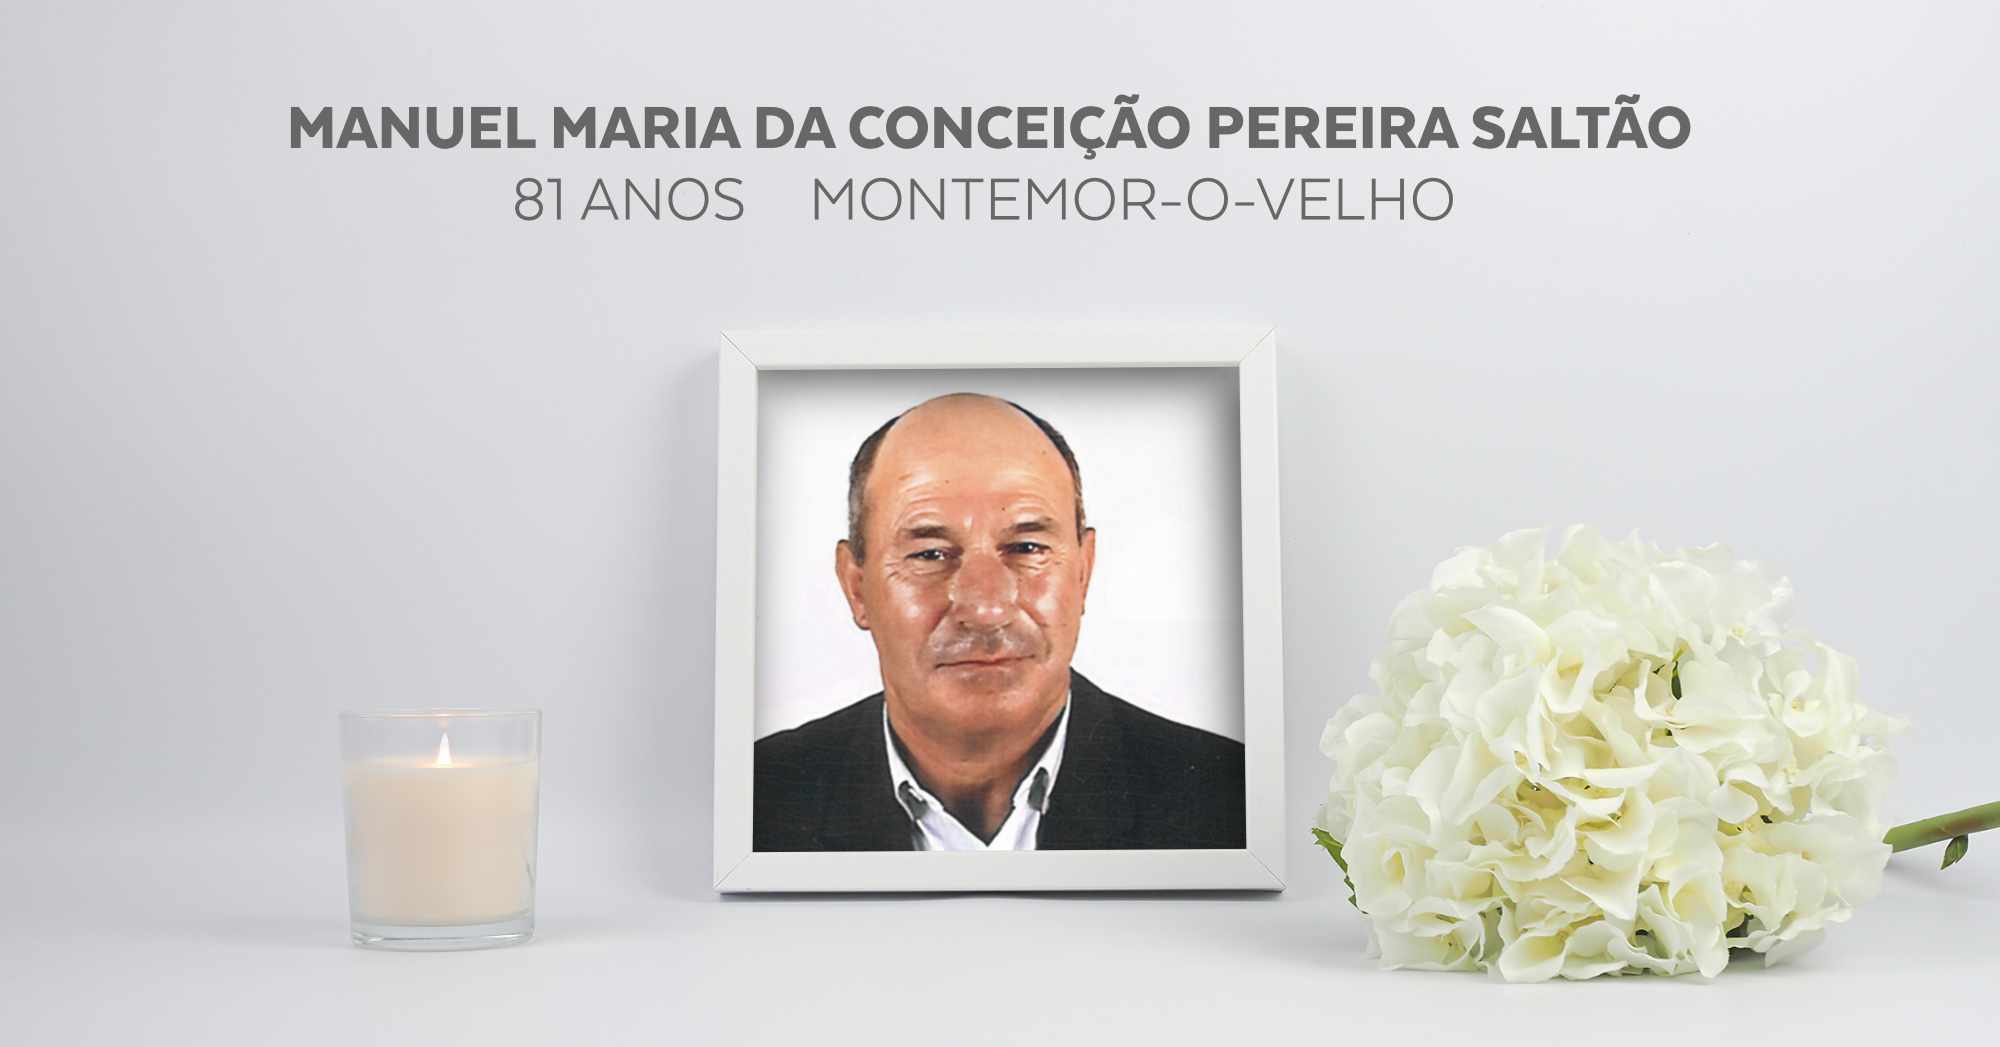 Manuel Maria da Conceição Pereira Saltão